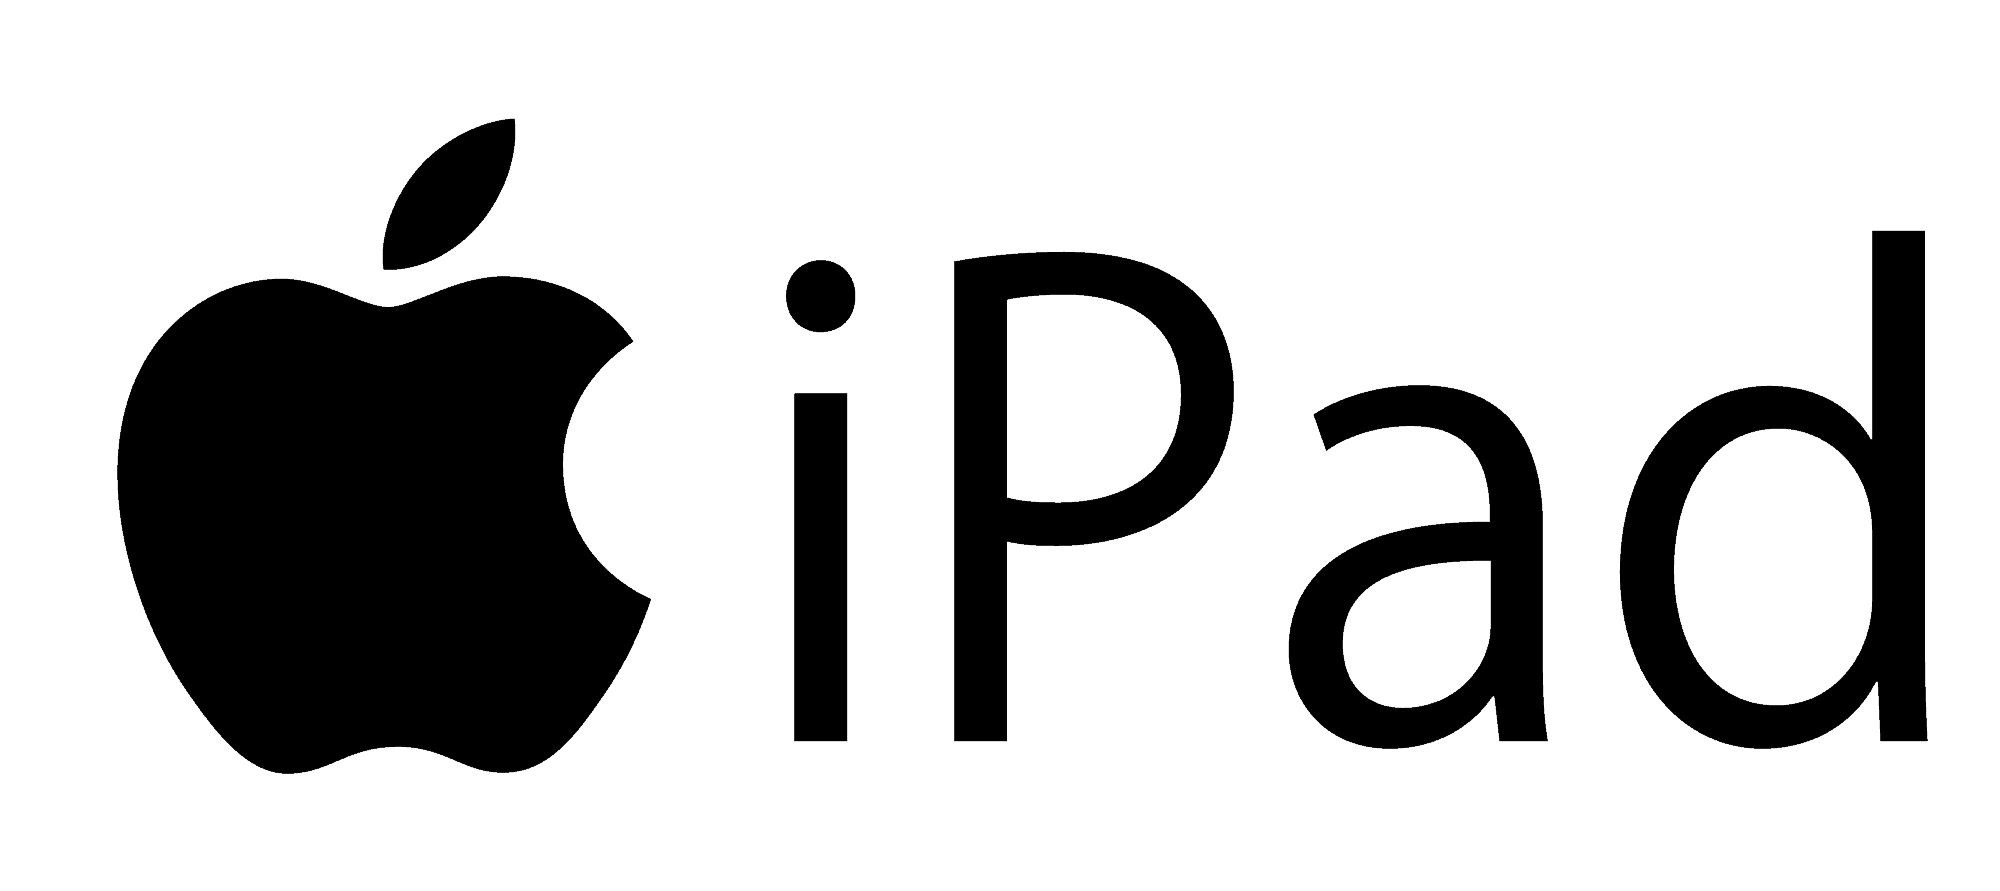 iPad-Logo